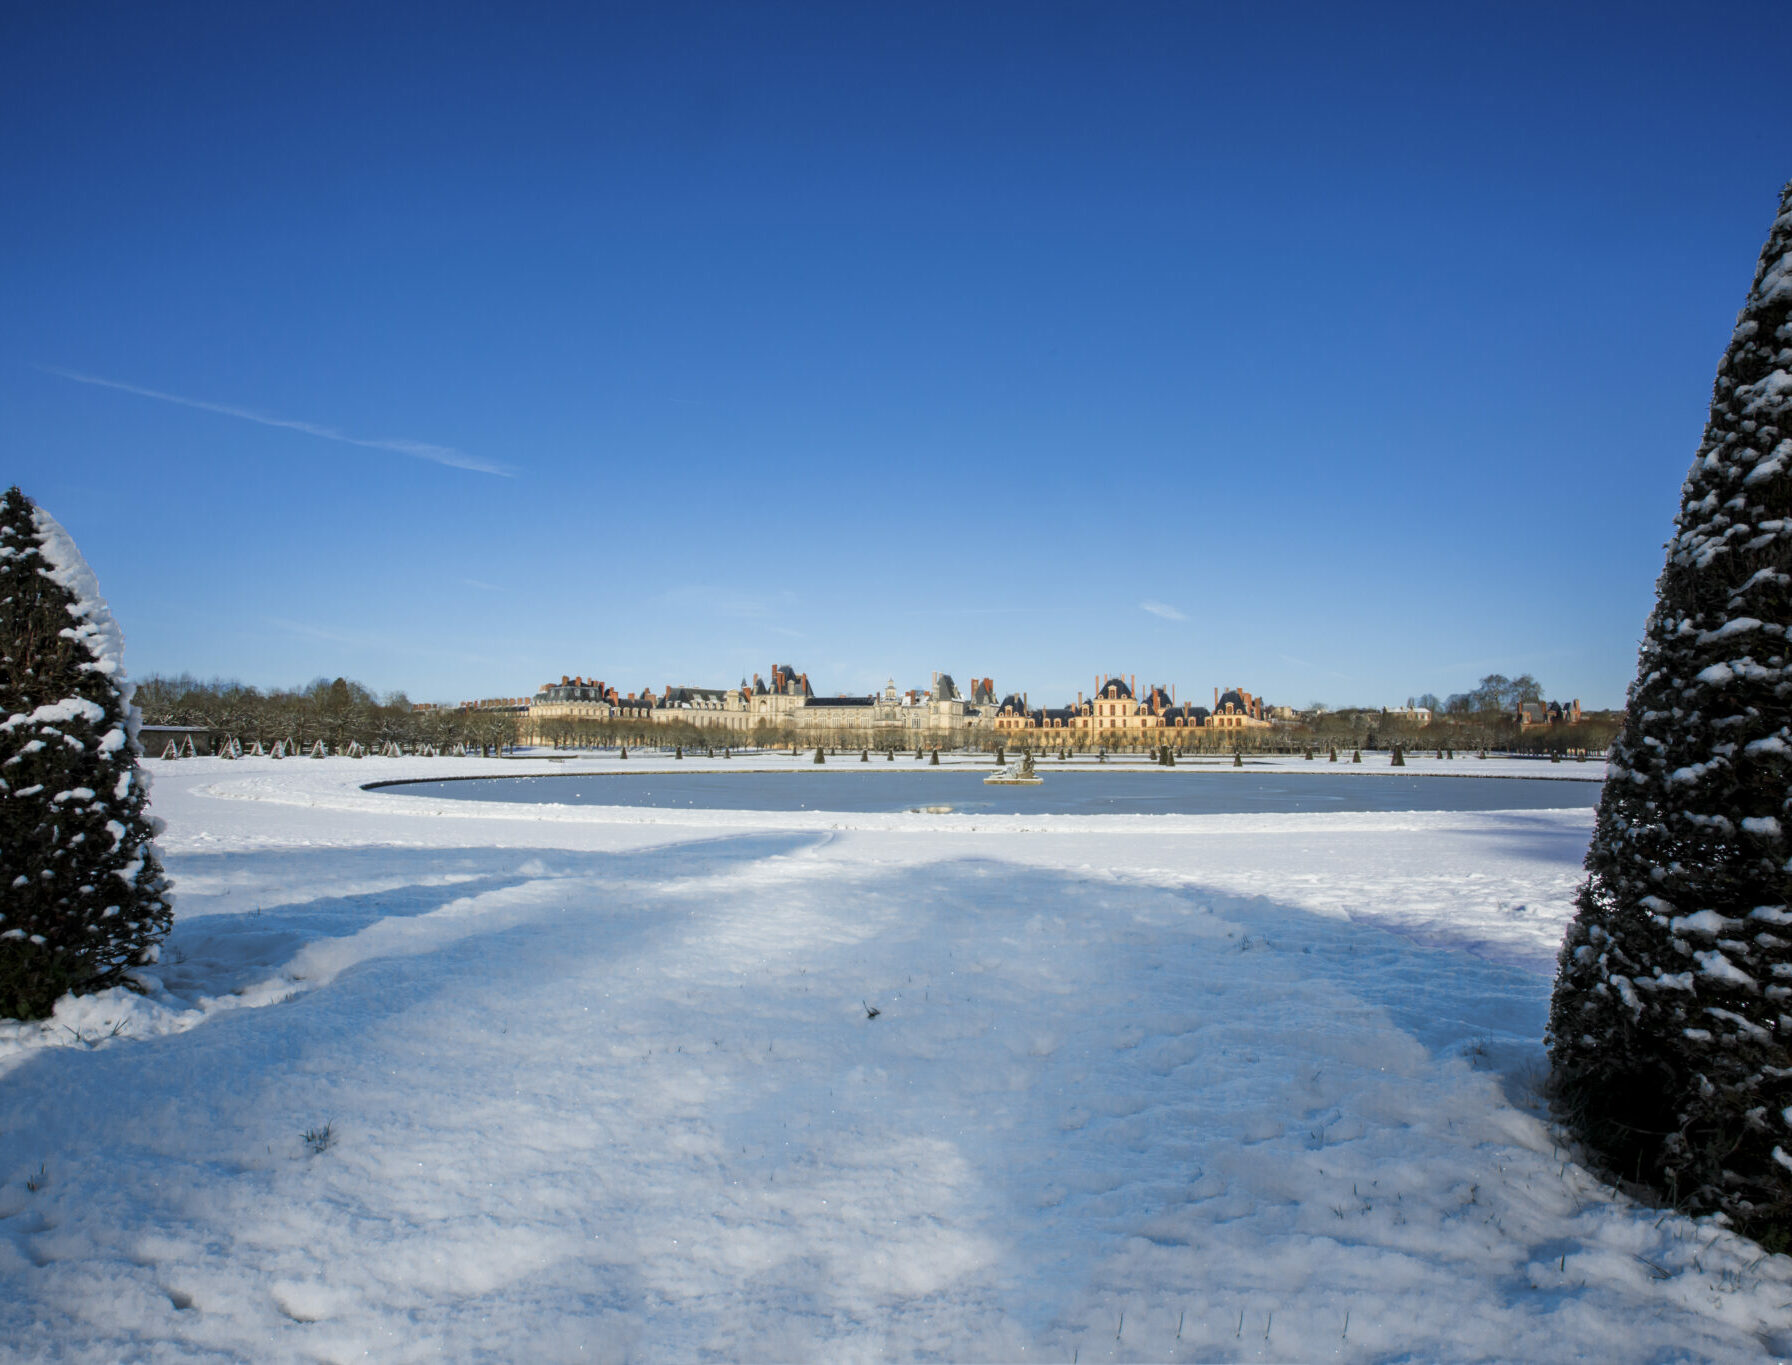 Noël / neige au château de Fontainebleau : venez profitez du château pendant les vacances d'hiver,en famille !